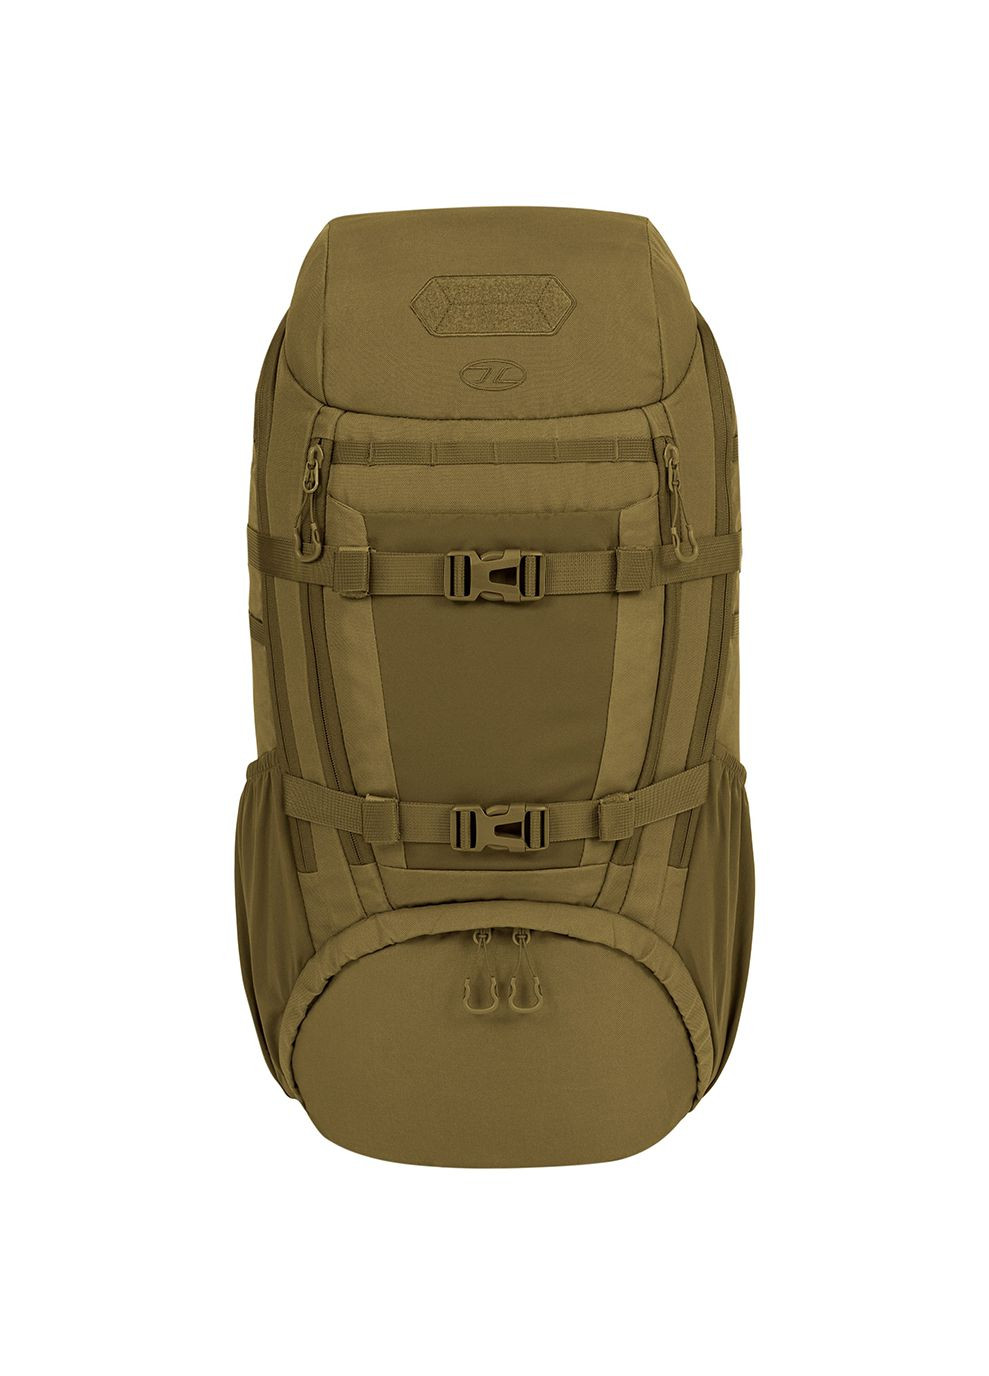 Рюкзак тактический Eagle 3 Backpack 40L Coyote Tan Highlander (268746794)